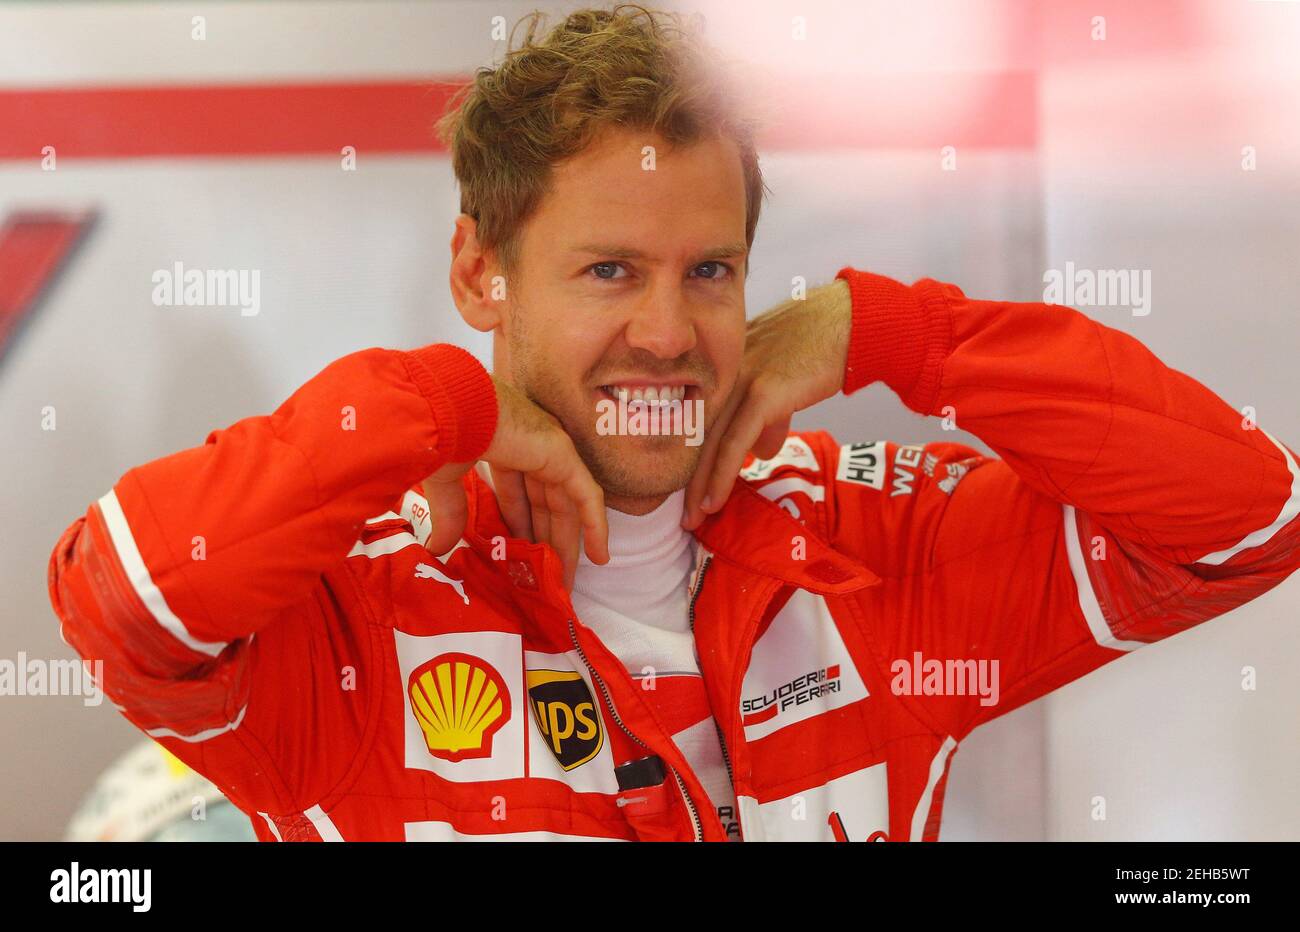 Formel 1 - F1 - großer Preis von Österreich 2017 - Red Bull Ring, Spielberg, Österreich - 8. Juli 2017 Ferrari Sebastian Vettel vor dem Qualifying Reuters/Dominic Ebenbichler Stockfoto